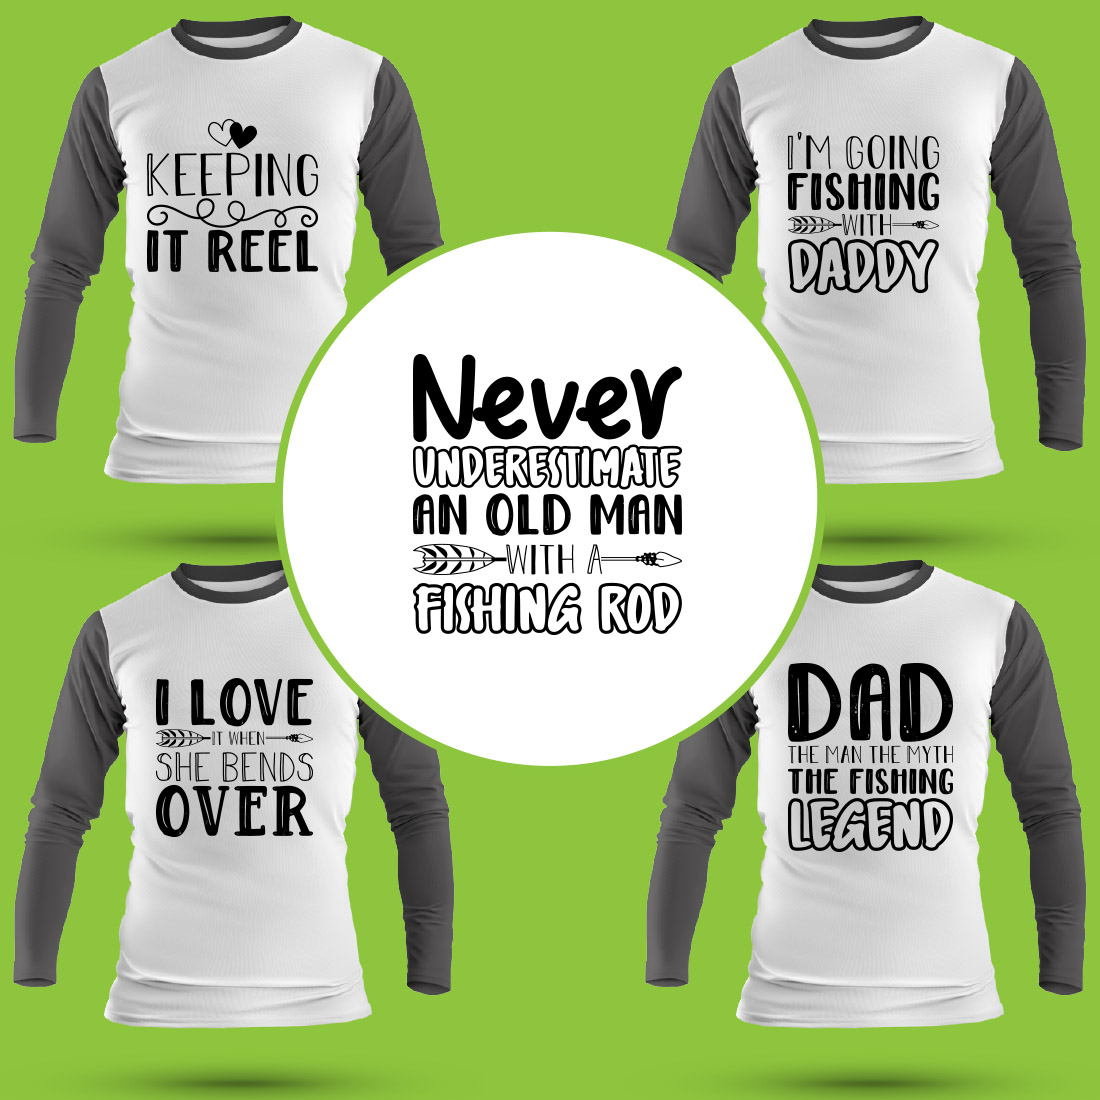 Fishing T Shirt Designs Bundle - MasterBundles